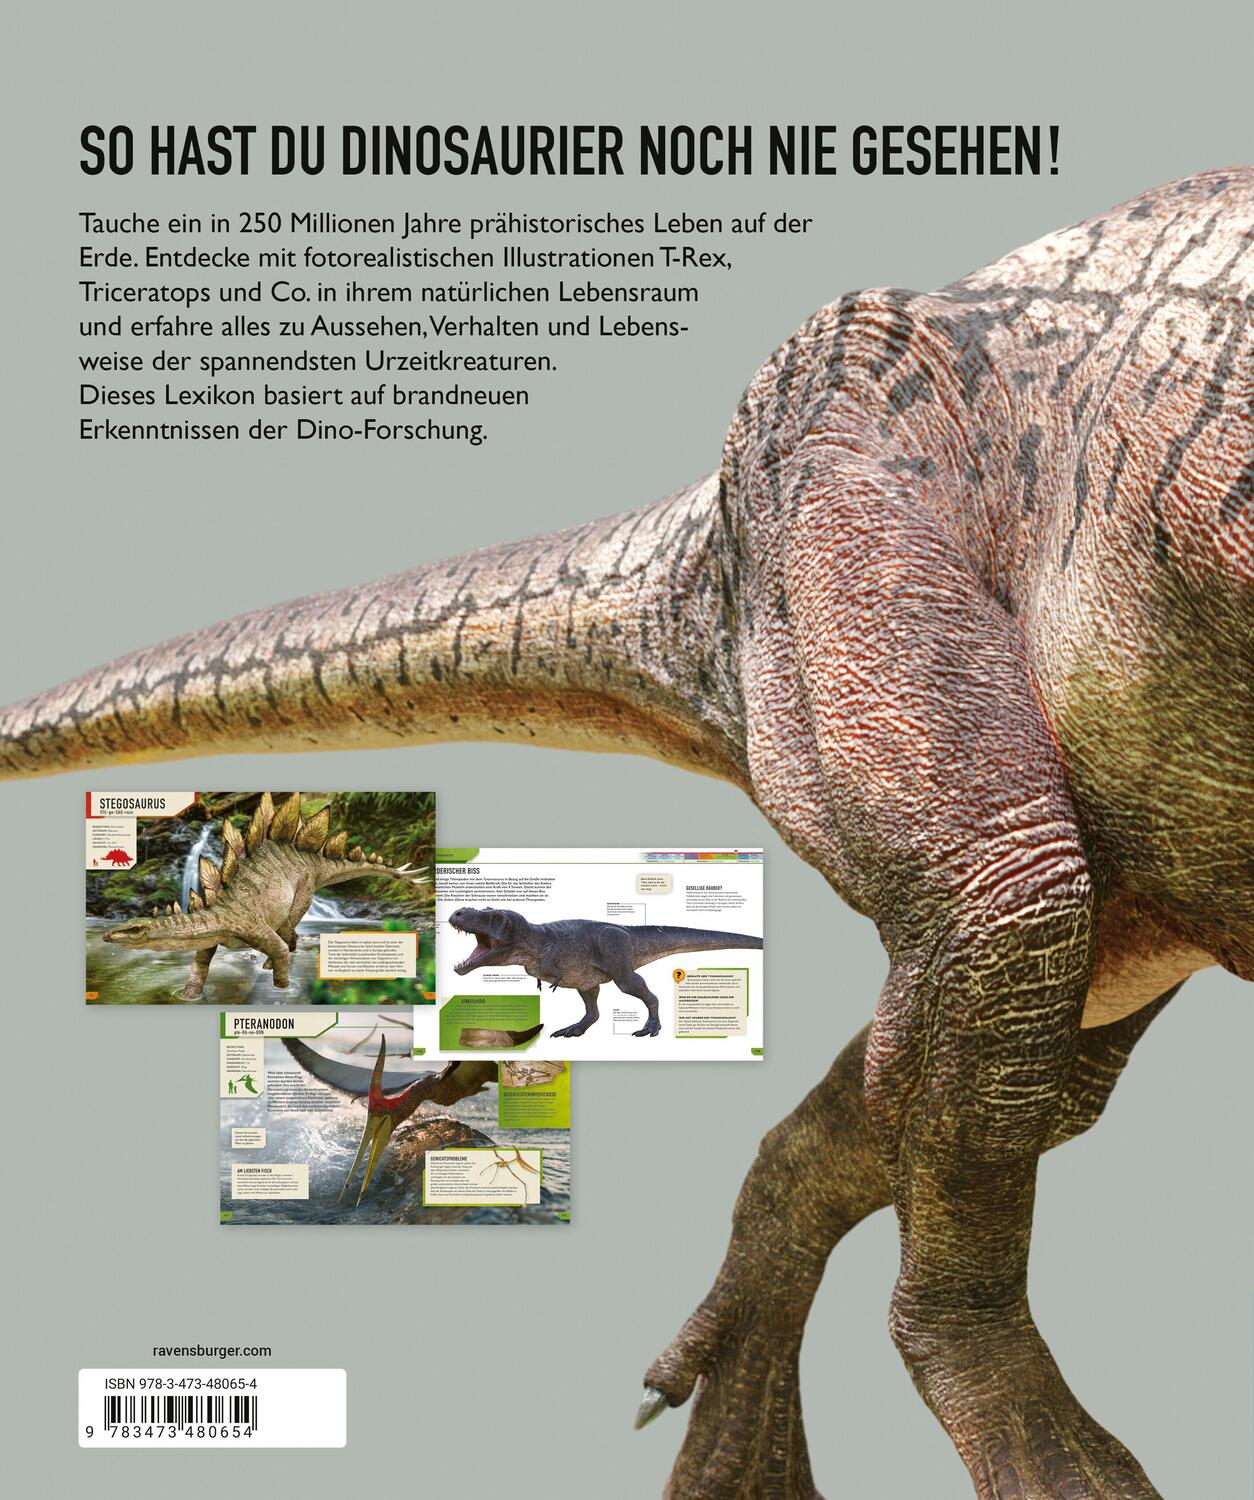 Rückseite: 9783473480654 | Das ultimative Dinosaurierlexikon: auf dem neusten Stand der...